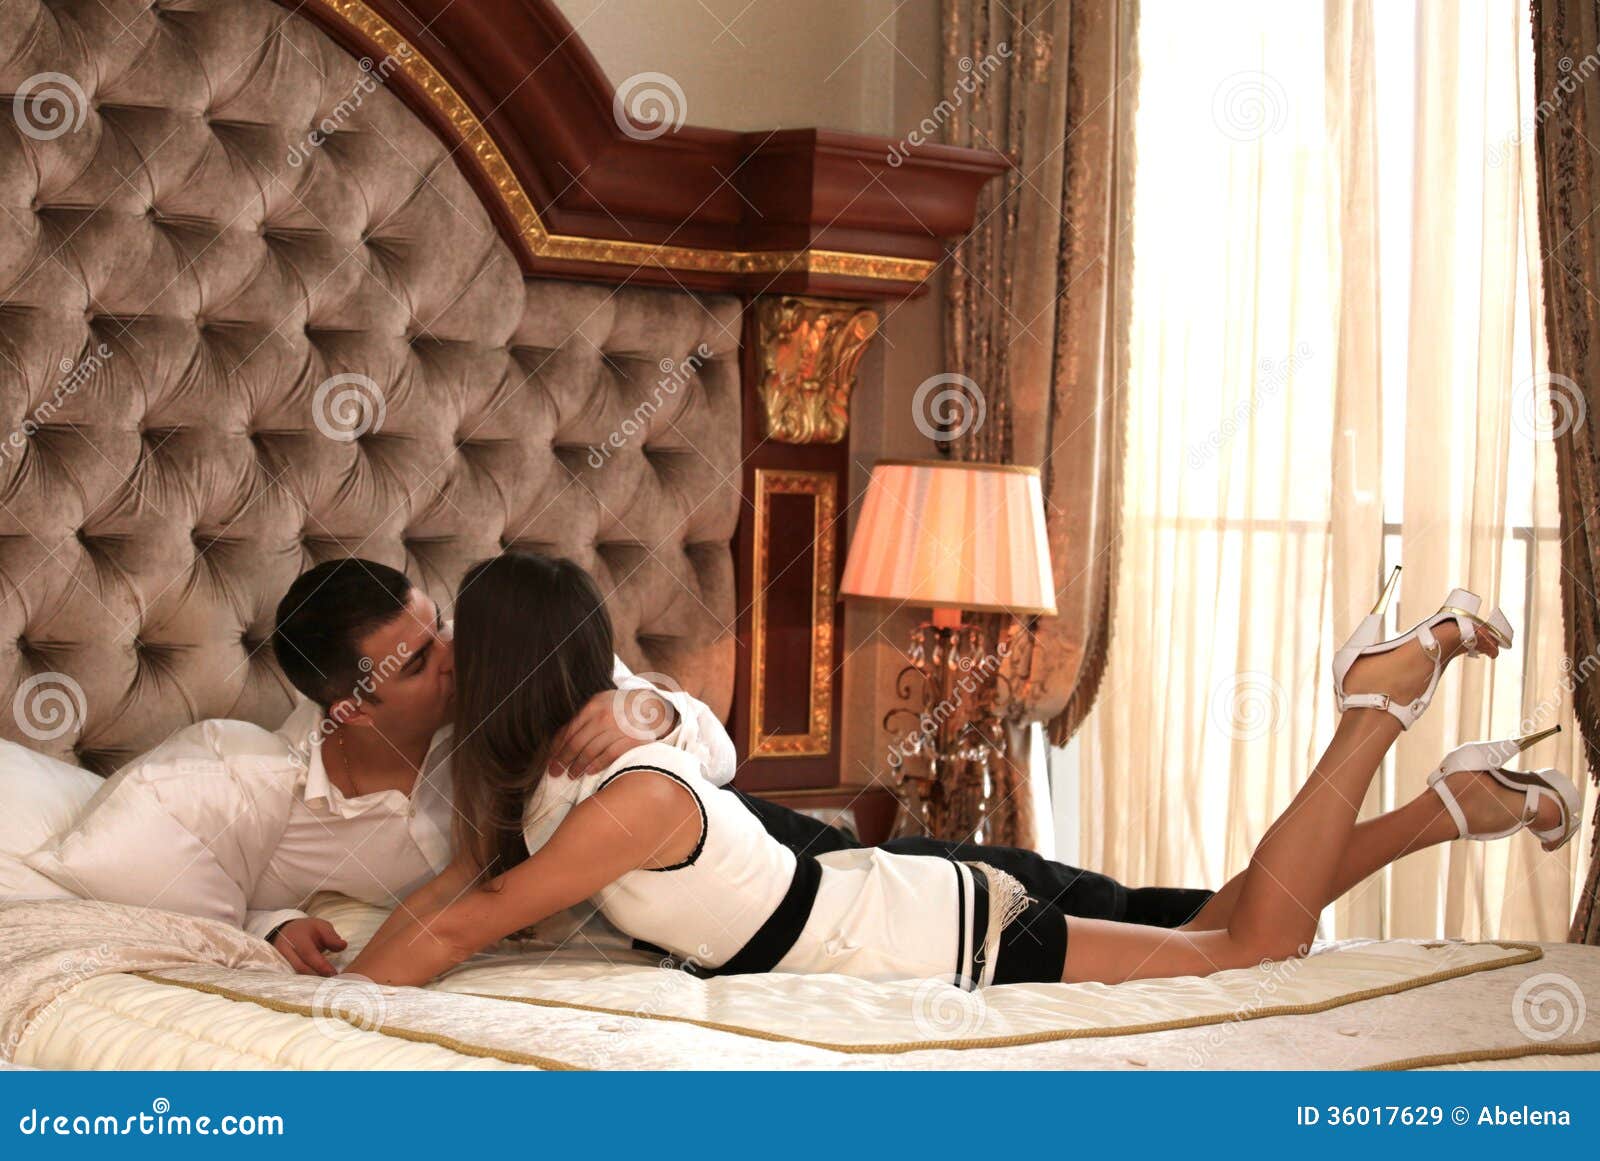 Бесплатное видео в командировке. Поцелуй в отеле. Пара в гостиничном номере. Любовь в гостинице. Фотосессия в гостиничном номере пара.